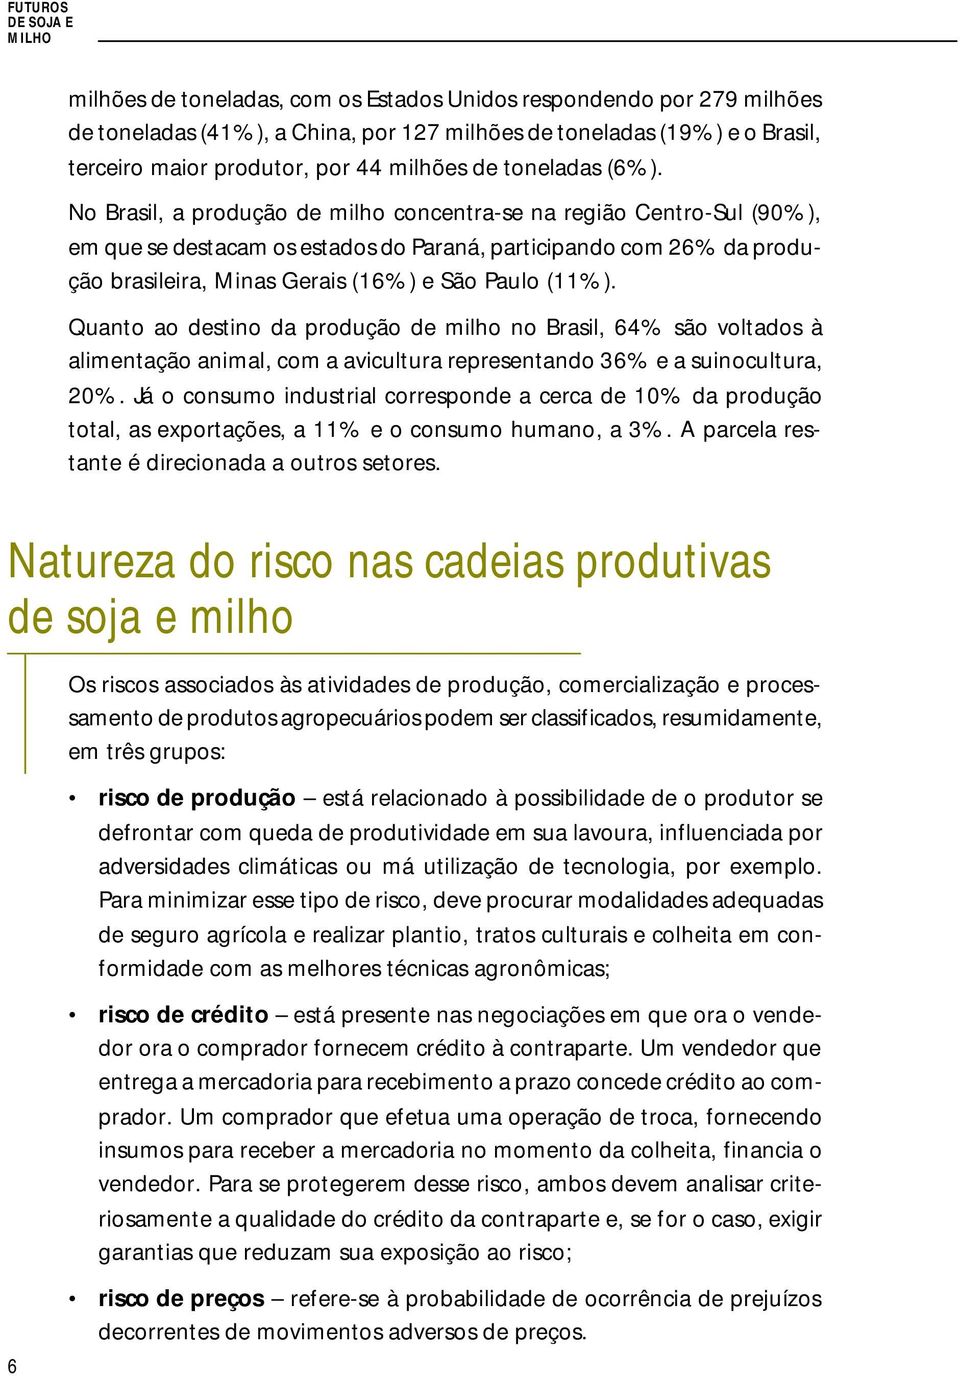 No Brasil, a produção de milho concentra-se na região Centro-Sul (90%), em que se destacam os estados do Paraná, participando com 26% da produção brasileira, Minas Gerais (16%) e São Paulo (11%).